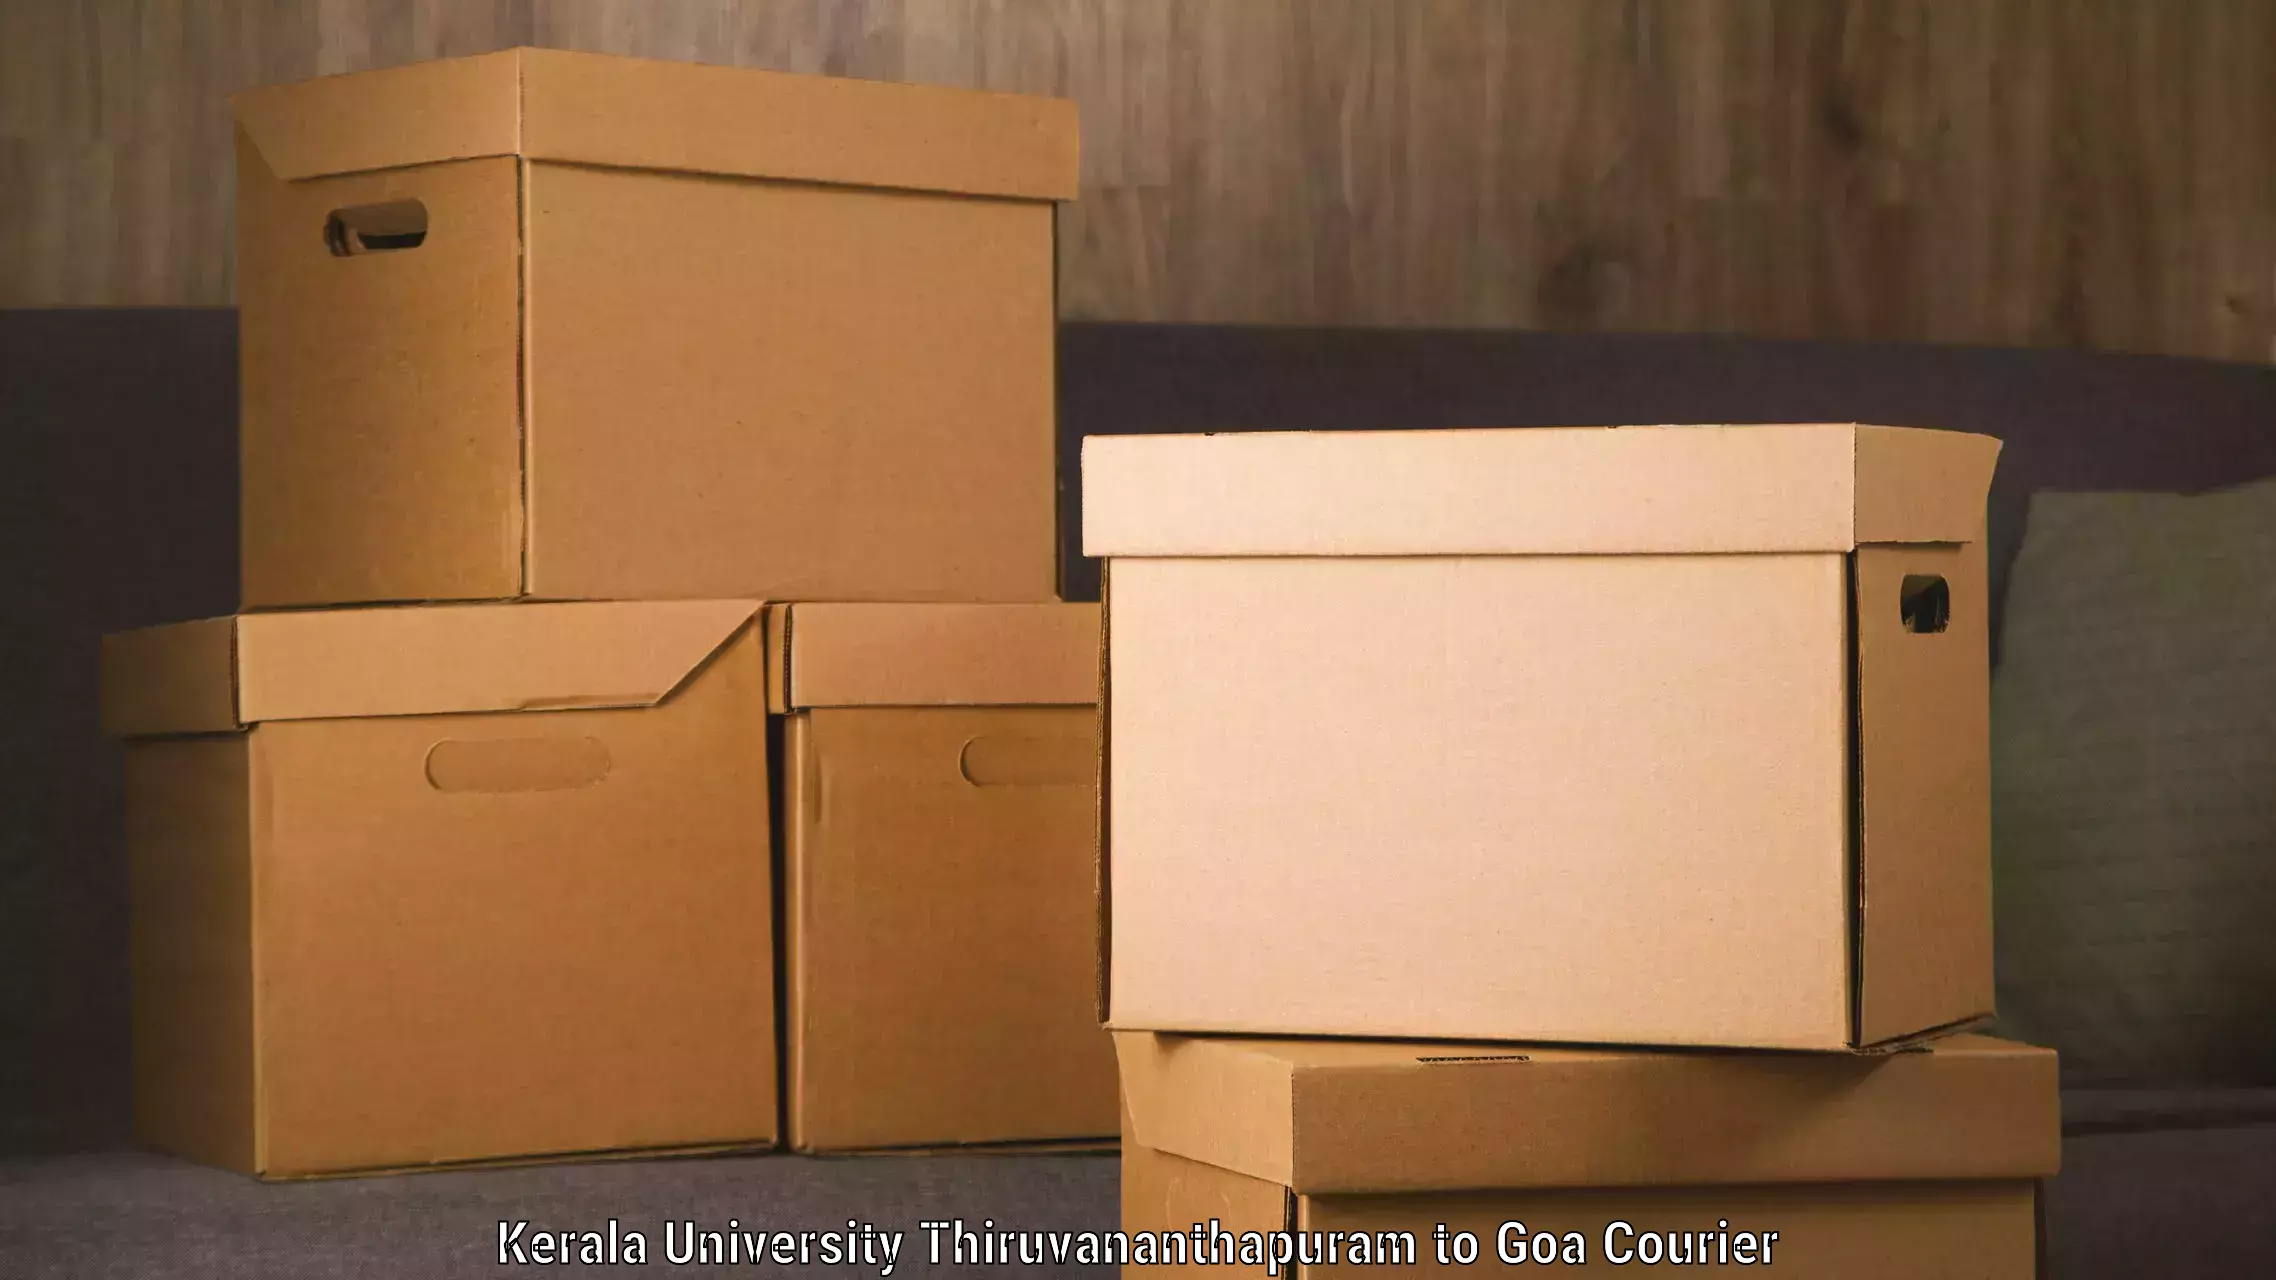 Premium courier services Kerala University Thiruvananthapuram to Vasco da Gama